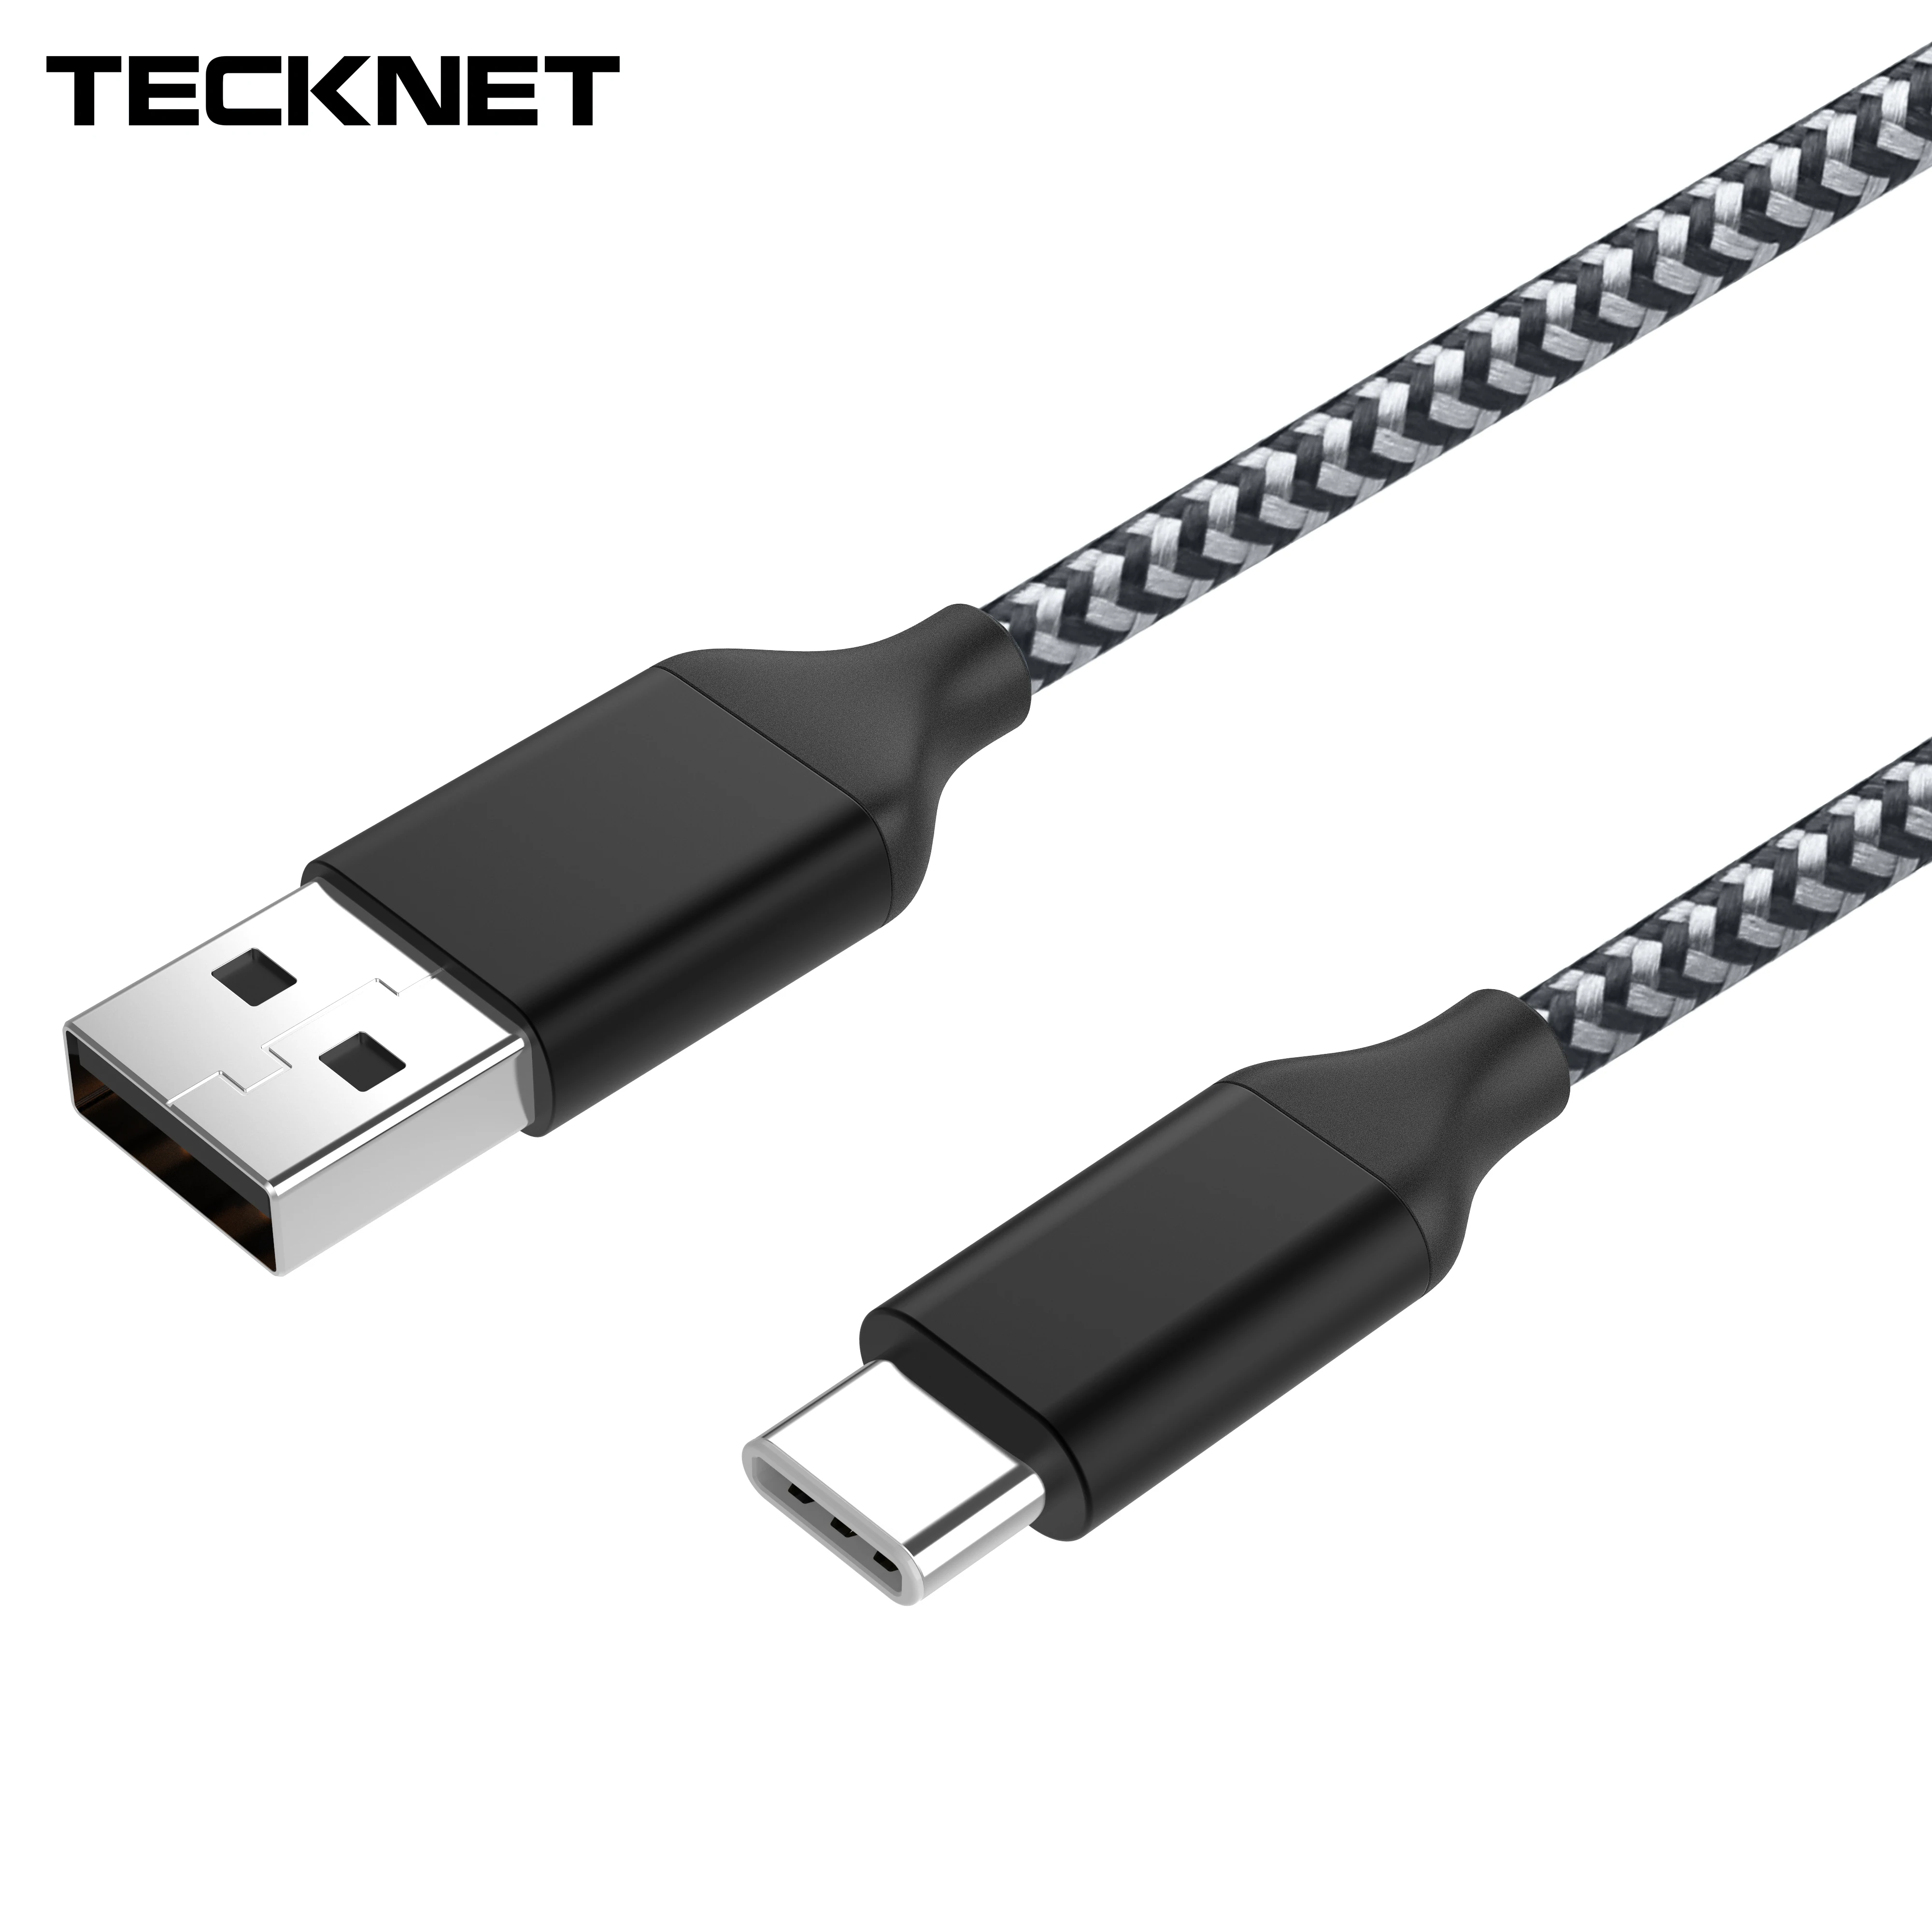 TECKNET usb type C кабель для быстрой зарядки usb c type-c 3,1 кабель для передачи данных зарядное устройство для телефона samsung S8 Note 8 Xiaomi mi6 huawei адаптер